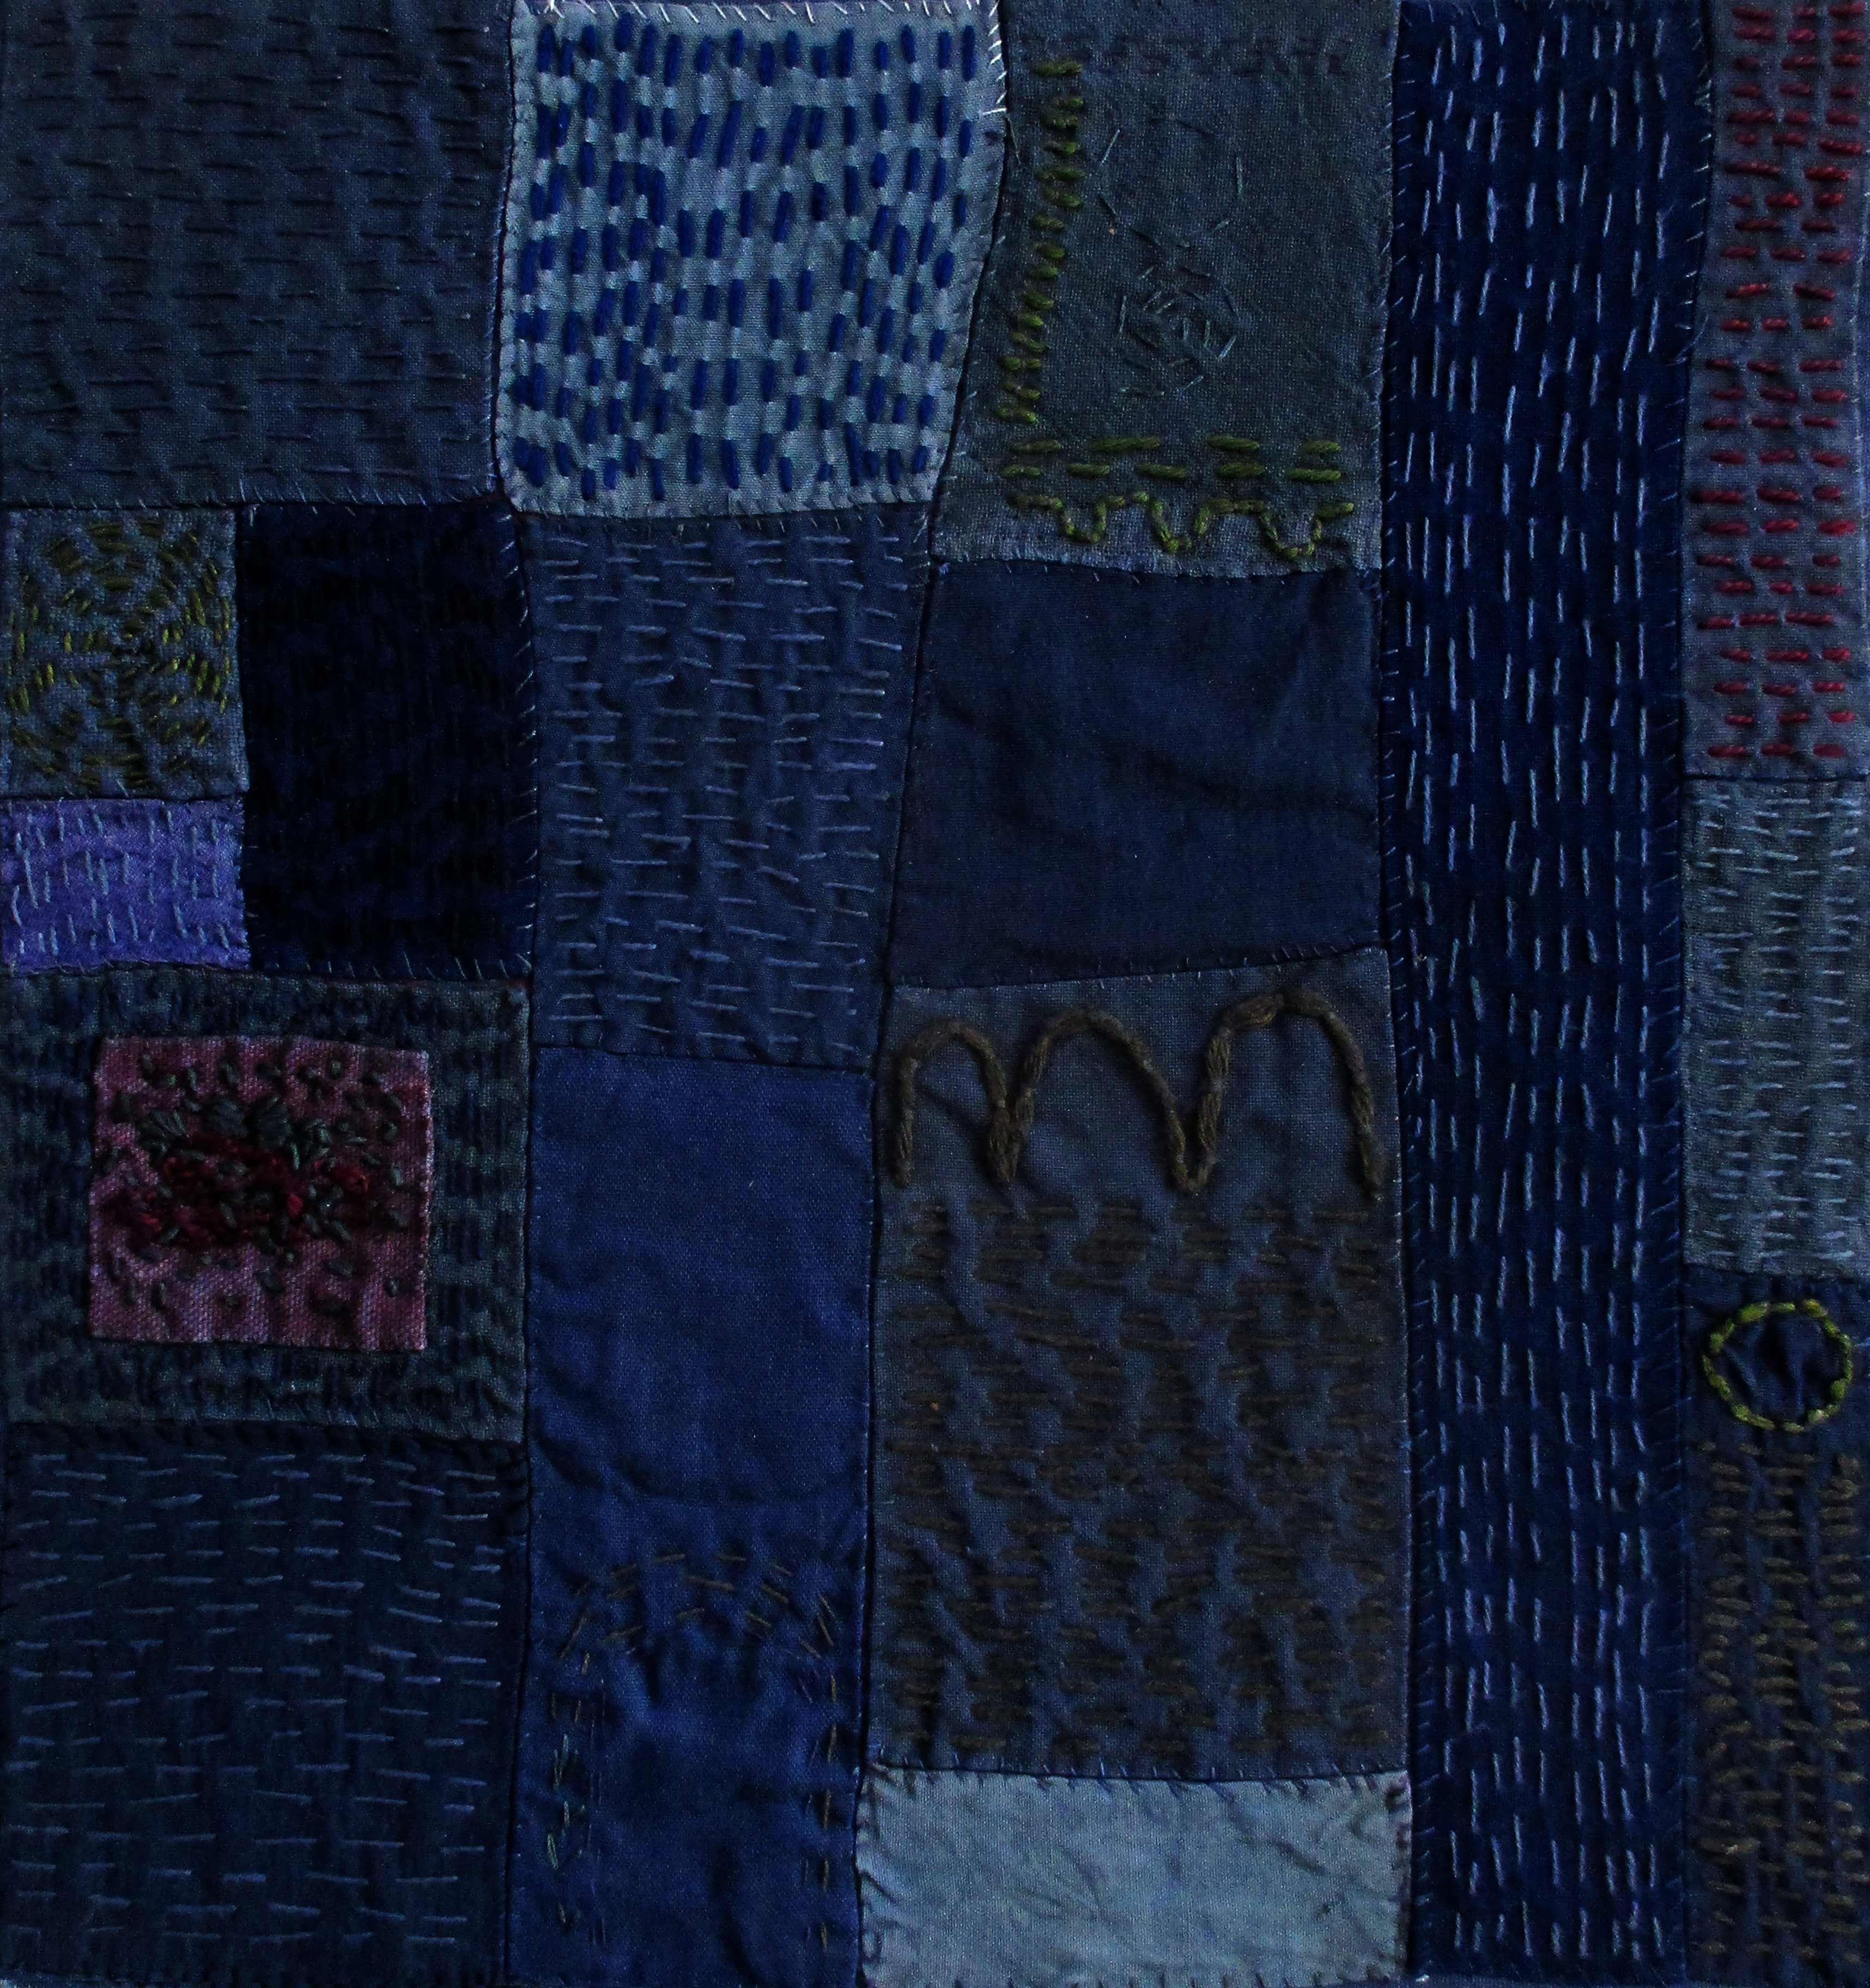 Fotografi av textilt verk med sammanfogade, blå tyglappar och små, raka stygn.